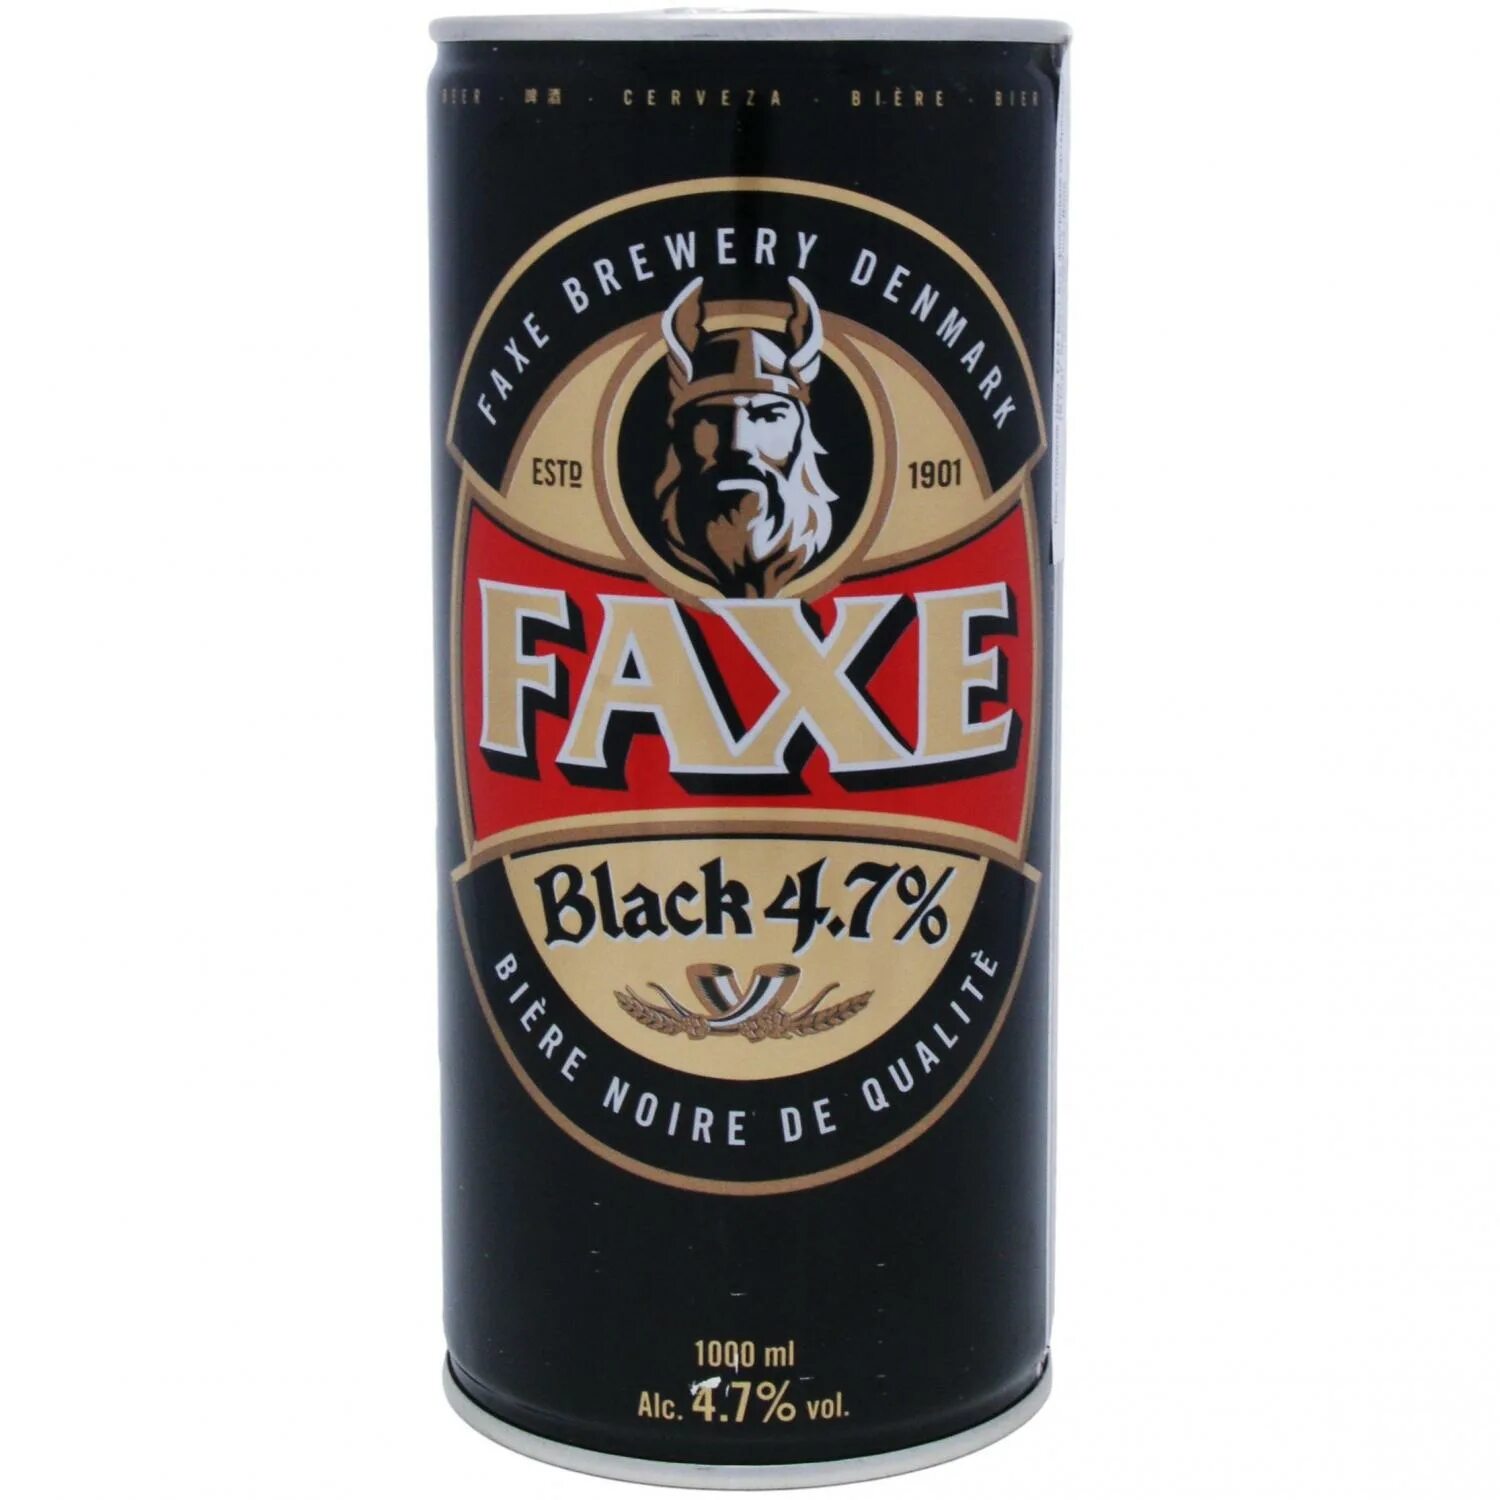 Faxe Black пиво. Faxe темное. Пиво факс темное. Пиво факс крепкое.